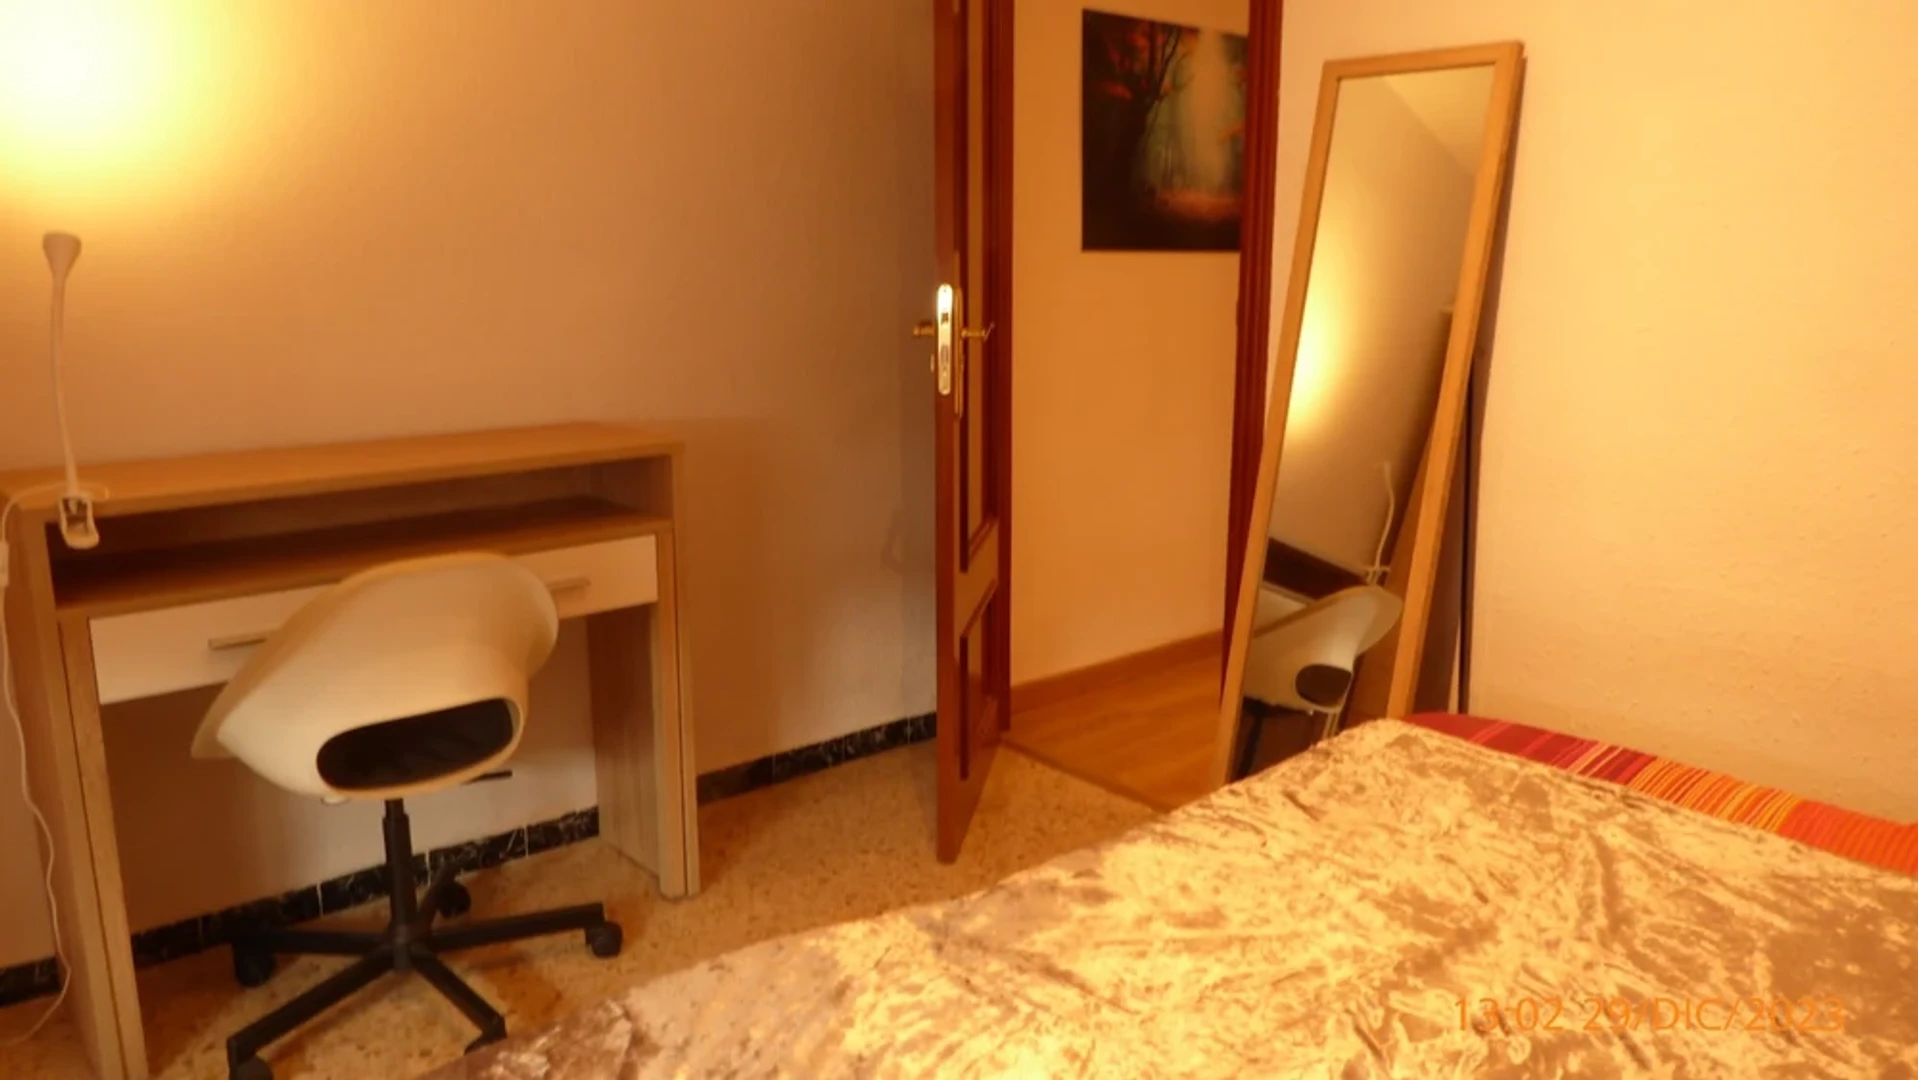 Lleida de çift kişilik yataklı kiralık oda